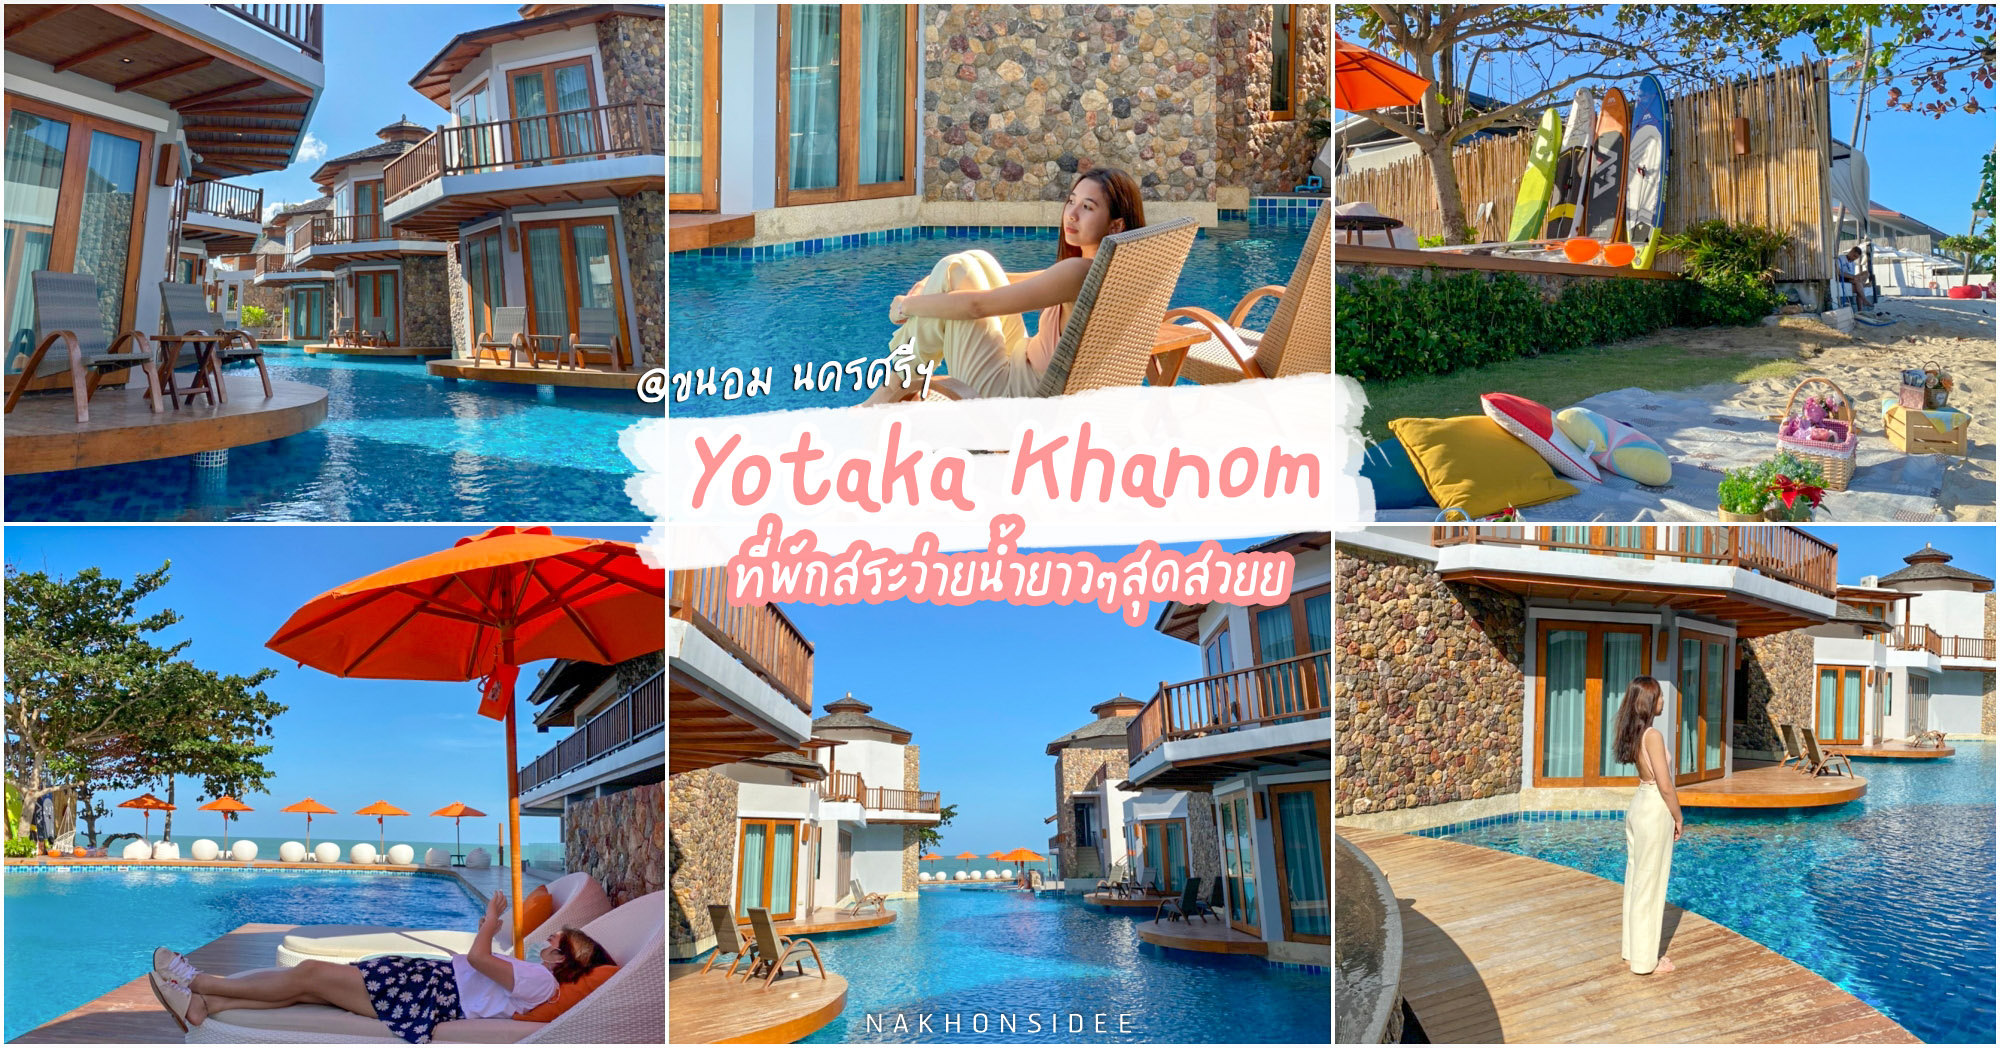 Yotaka at khanom สุดยอดโรงแรมแห่งสระว่ายน้ำ ริมทะเล นครศรีธรรมราช โยทะกา  แอท ขนอม สวยมวากก - รีวิว นครศรีดีย์